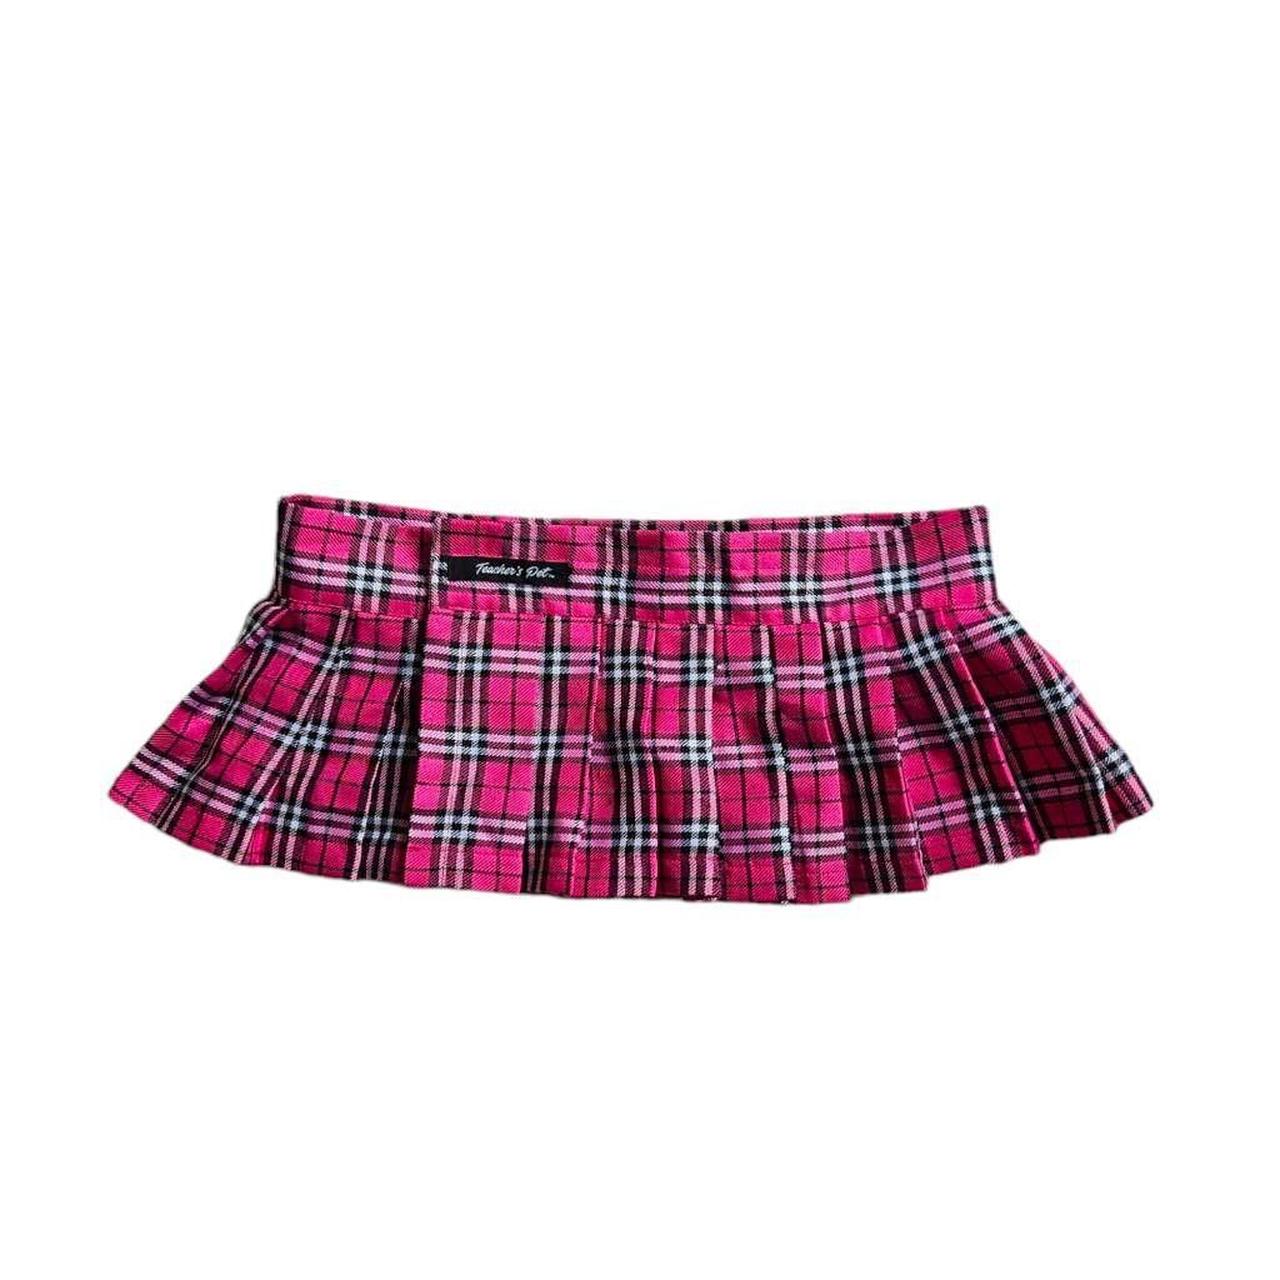 y2k plaid micro mini skirt FEATURES: adorable super... - Depop